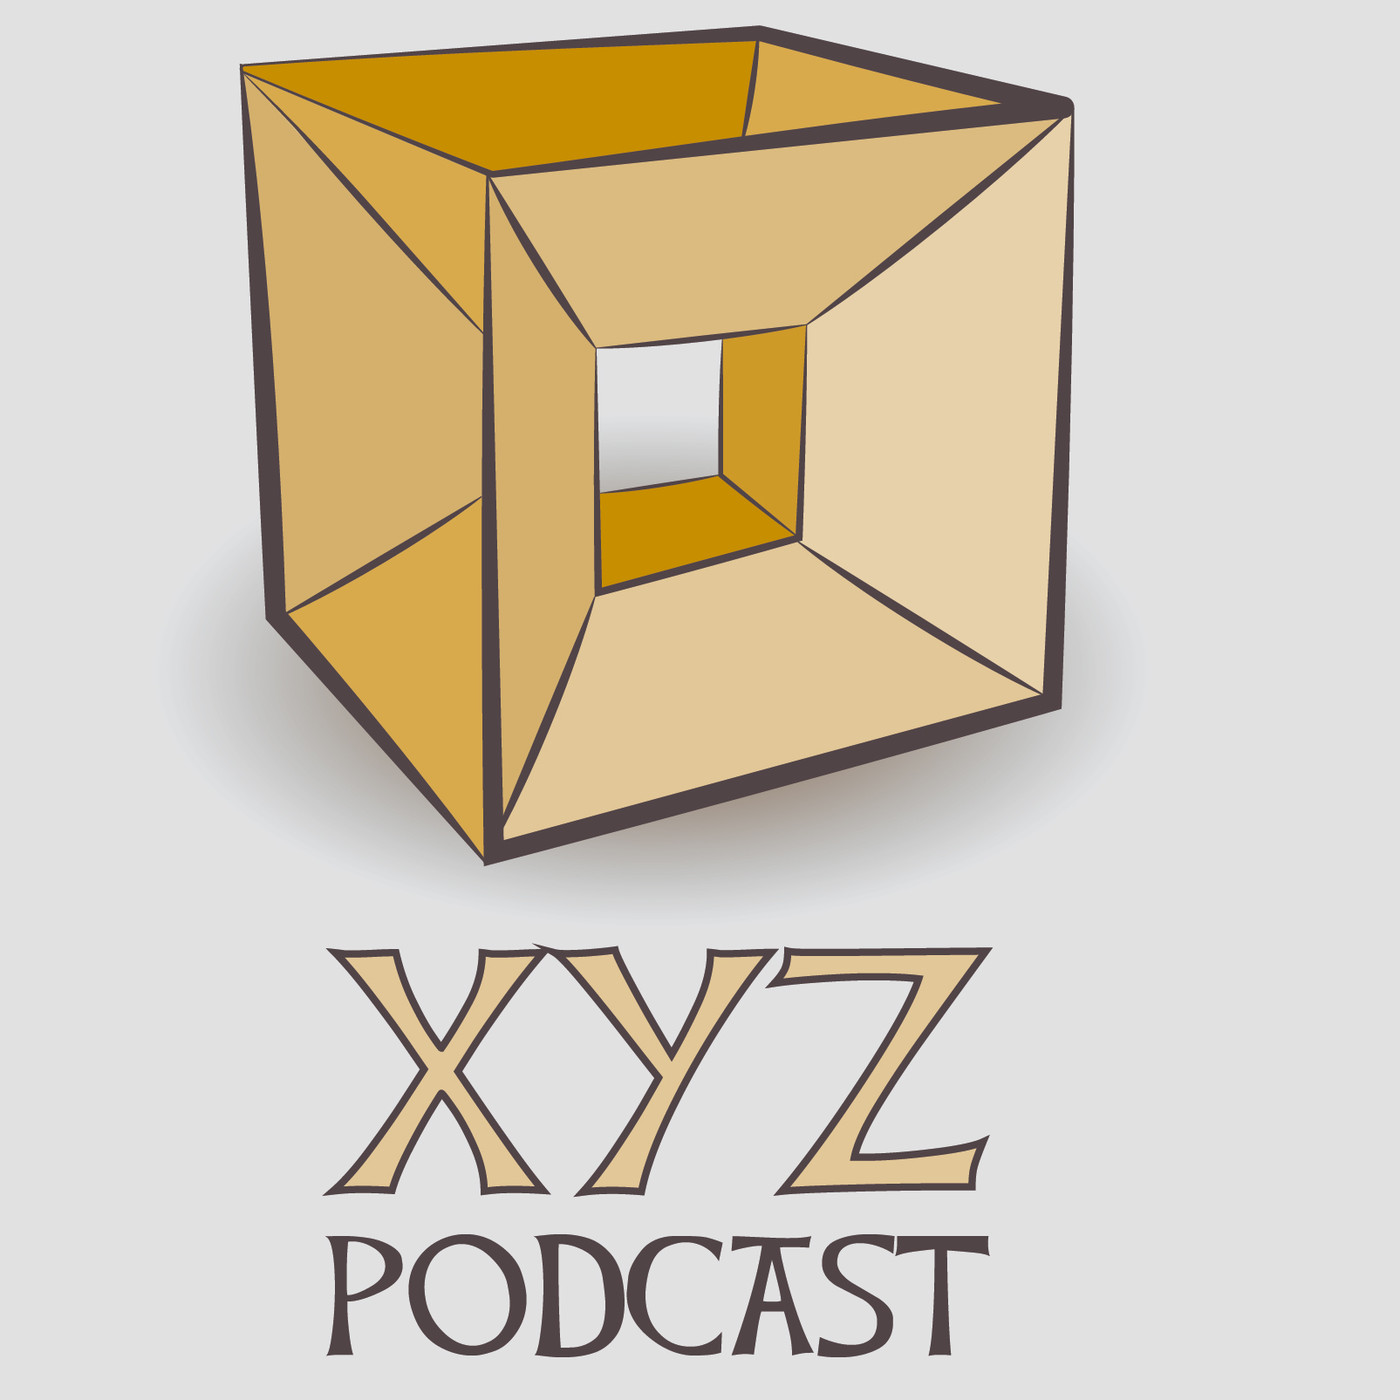 Podcast XYZ